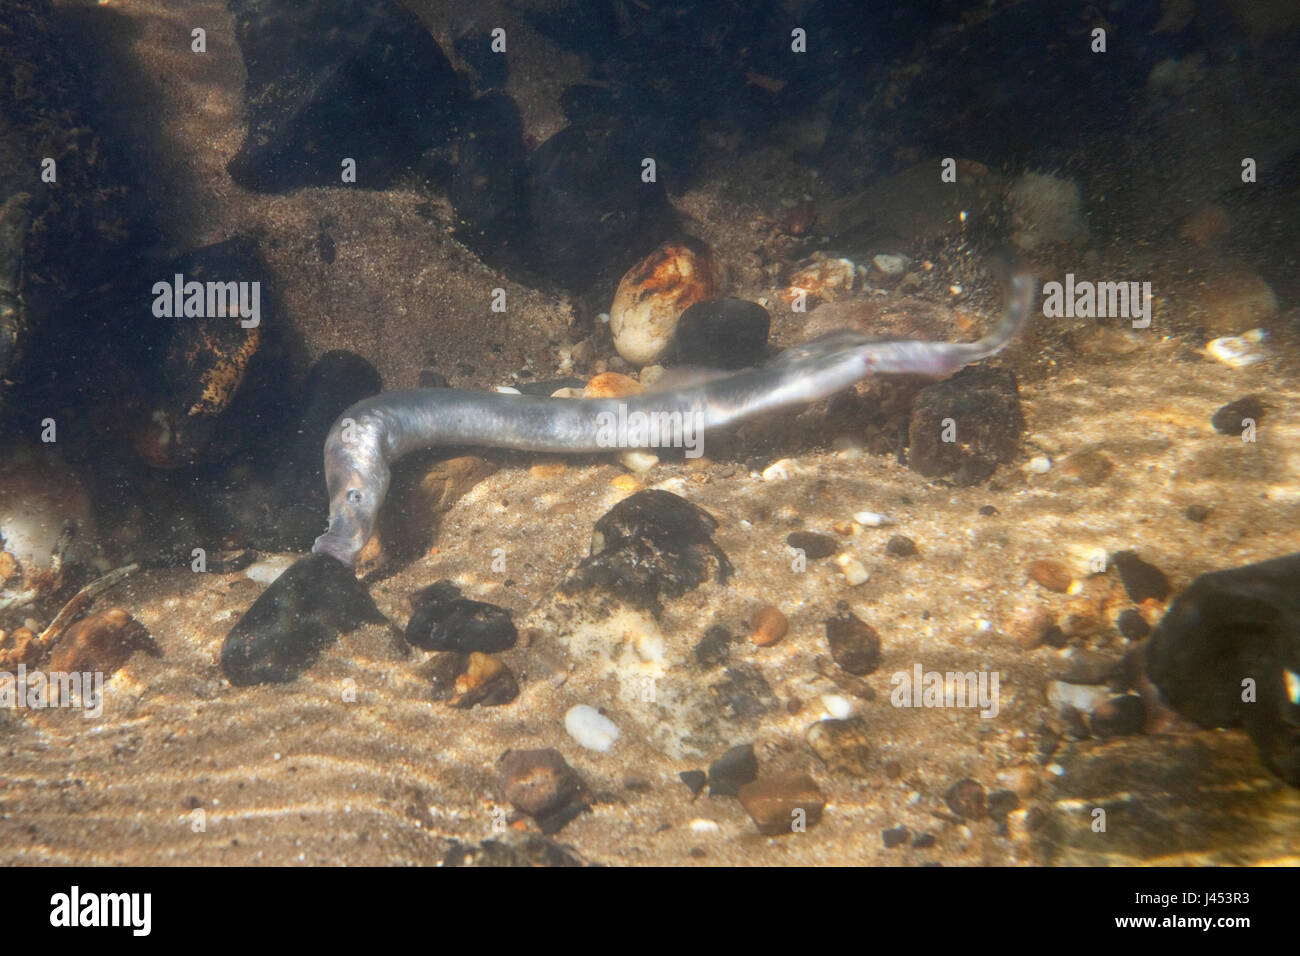 female river lamprey. Stock Photo